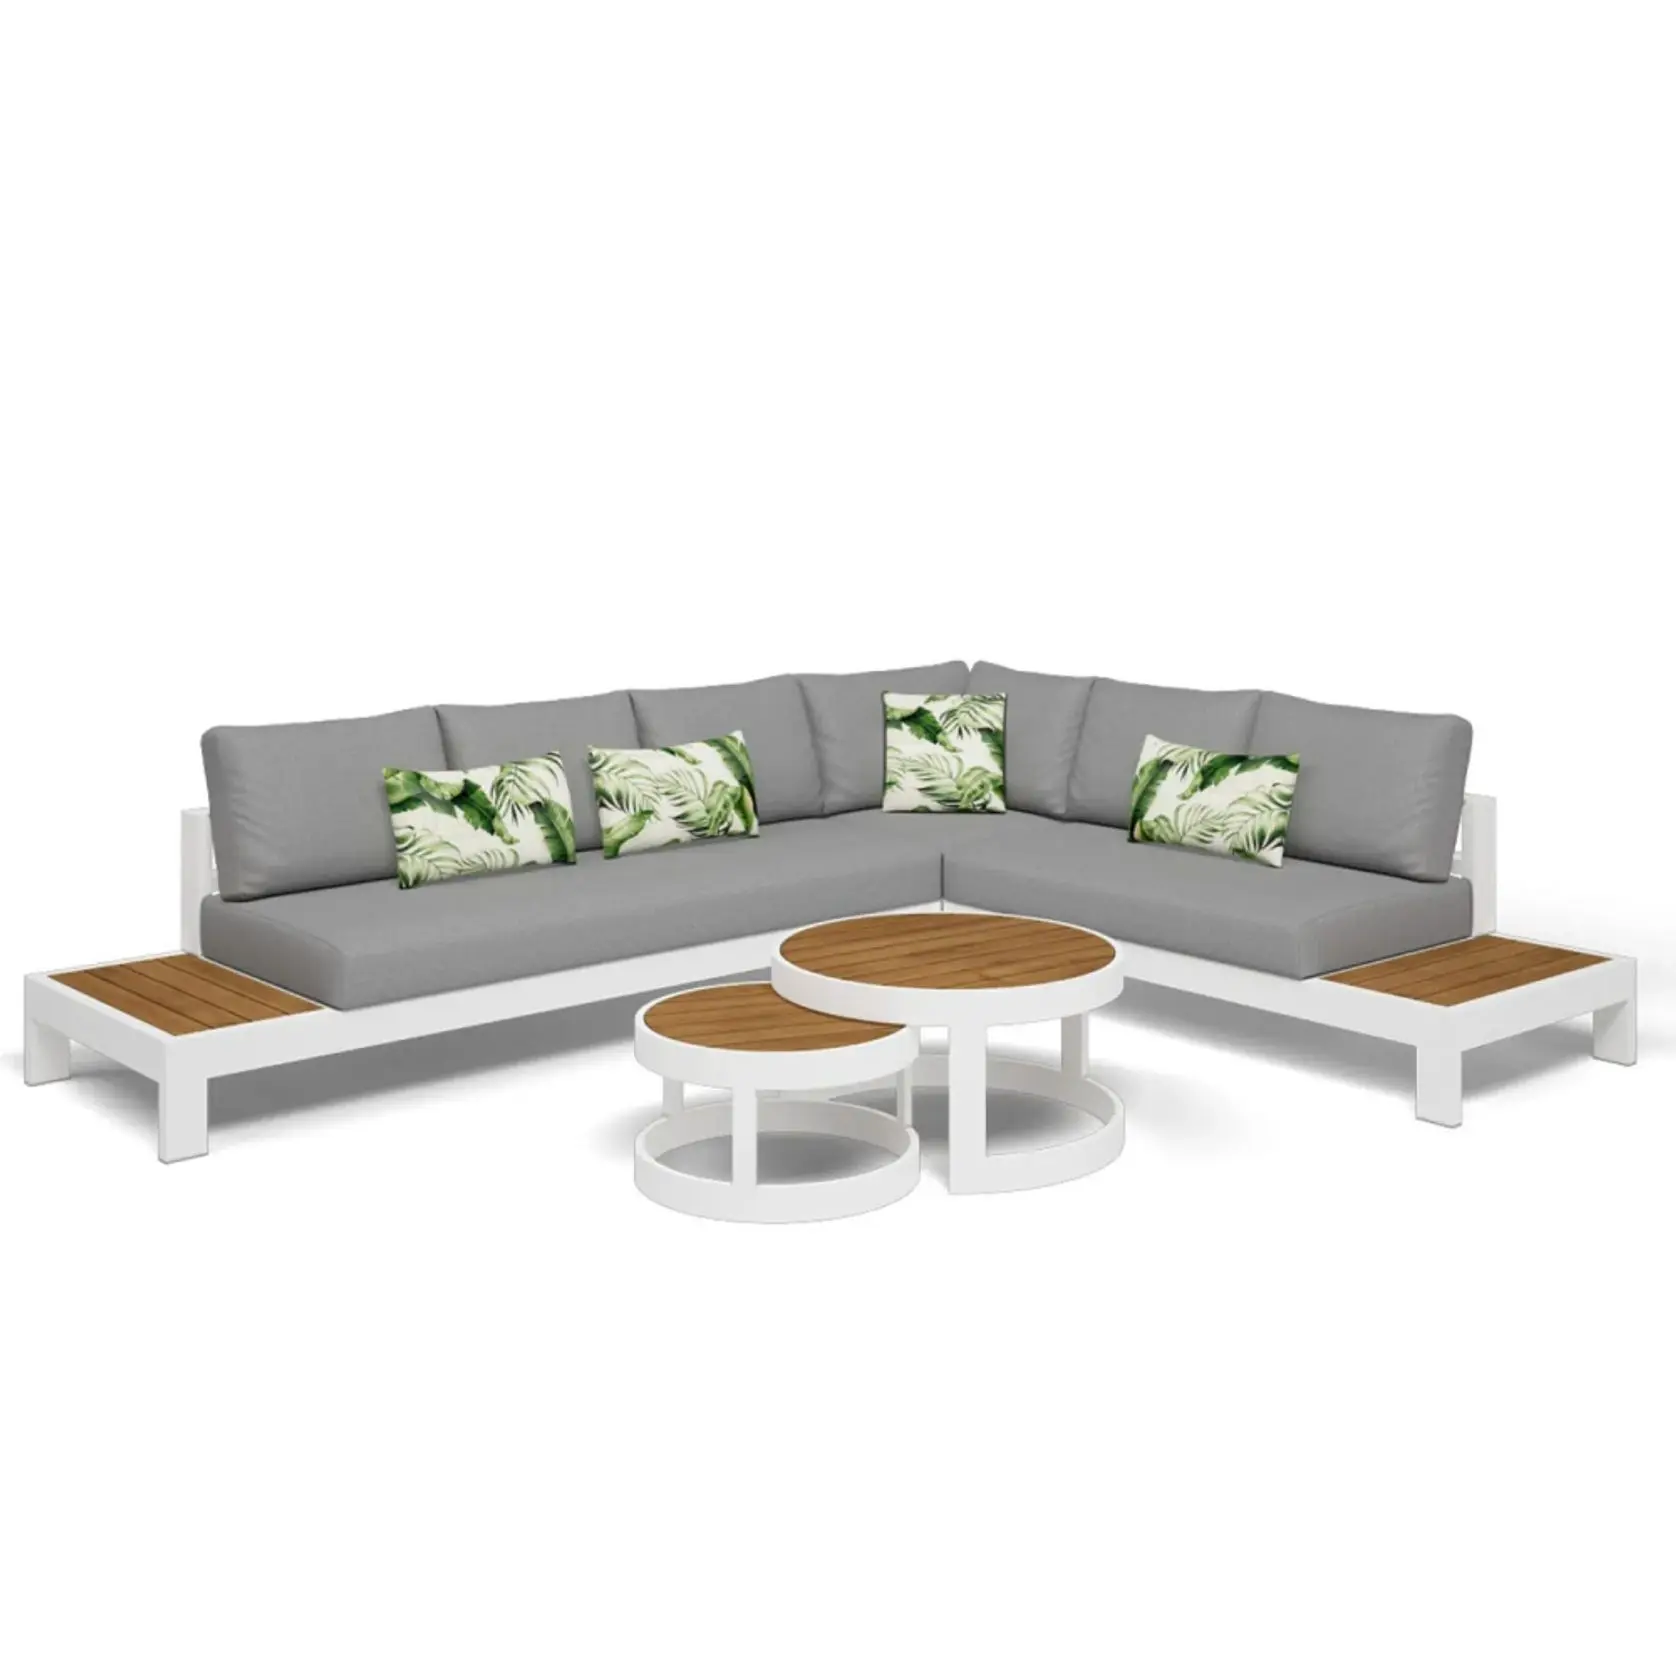 Ensemble de salon sectionnel en métal imperméable fabricant chinois de canapé d'extérieur en forme de L meubles en aluminium ensembles de canapés de patio GardenSofa